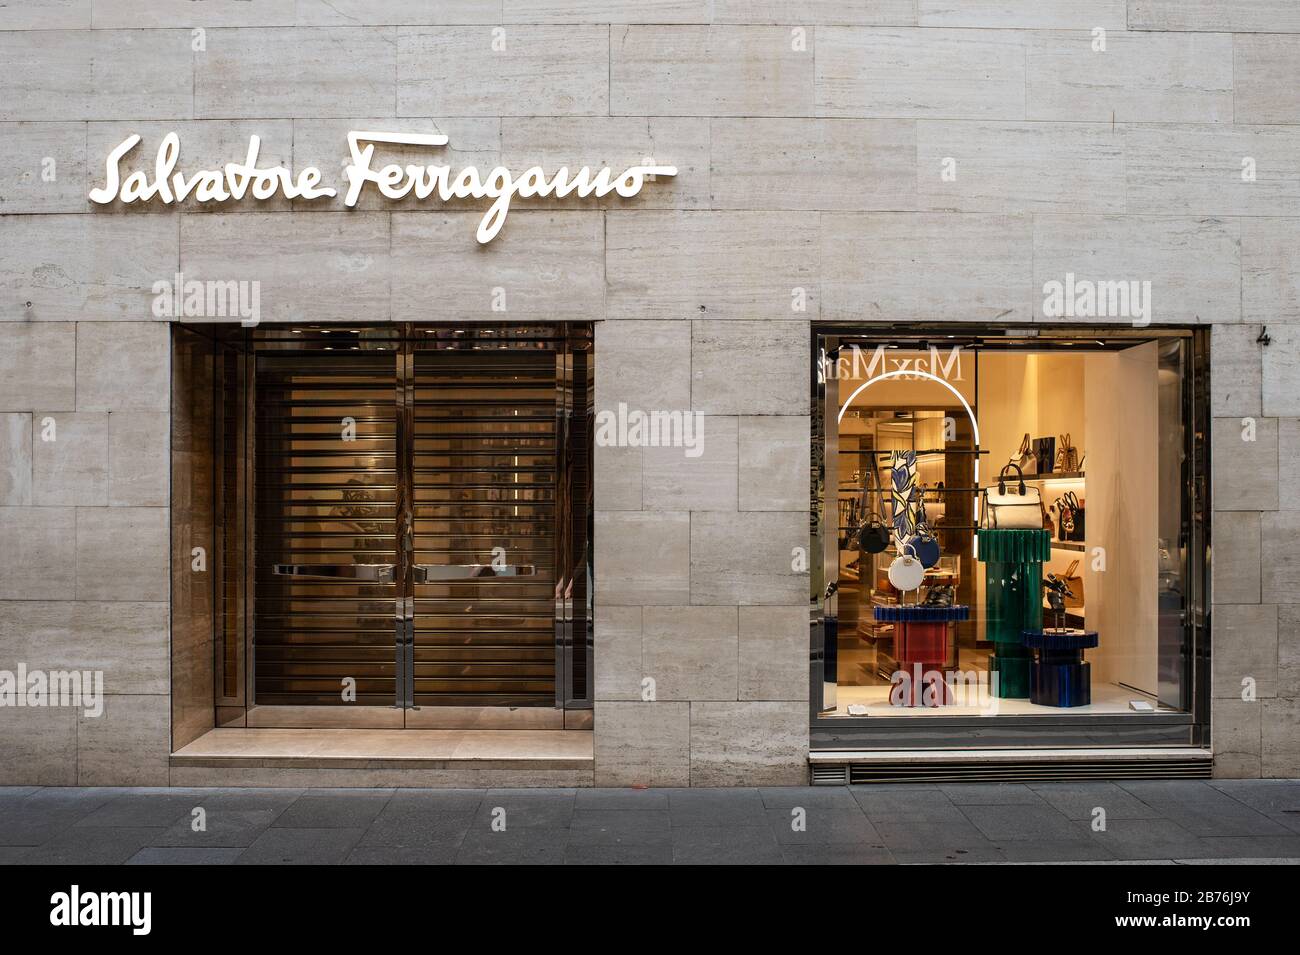 Toutes les marques de mode les plus célèbres ont fermé leurs magasins Dans La Via dei Condotti, dans le centre de Rome, l'une des rues commerçantes les plus célèbres de la capitale, en raison de l'épidémie de Coronavirus qui a frappé l'Italie. Banque D'Images